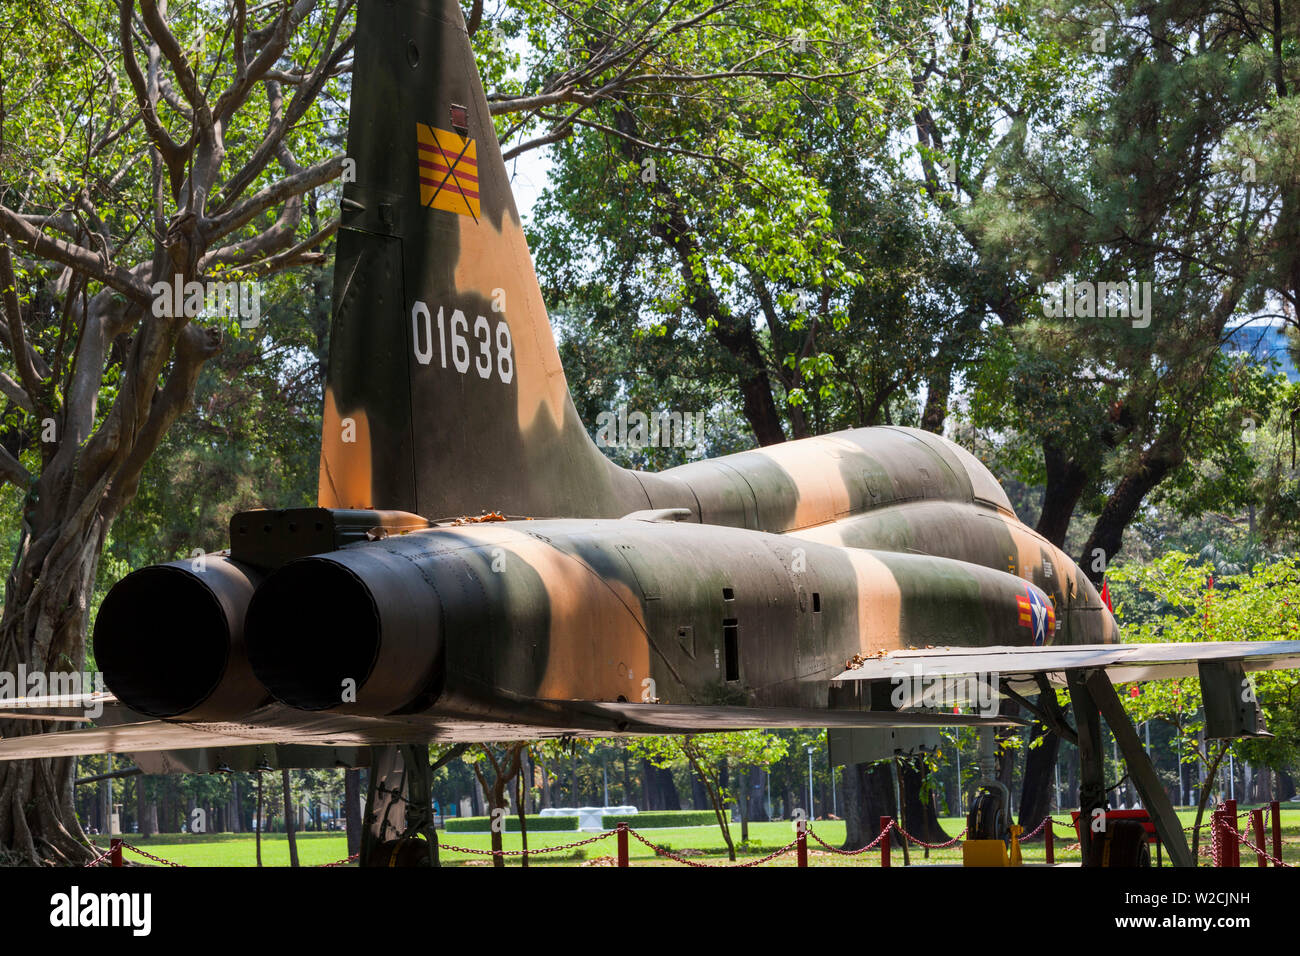 Vietnam, Ho Chi Minh City, Palast der Wiedervereinigung, dem ehemaligen Sitz der Südvietnamesischen Regierung, ehemaligen Südvietnamesischen F-5E Jagdflugzeug nutzte das Schloss am Ende des Vietnam Krieges Bombe Stockfoto